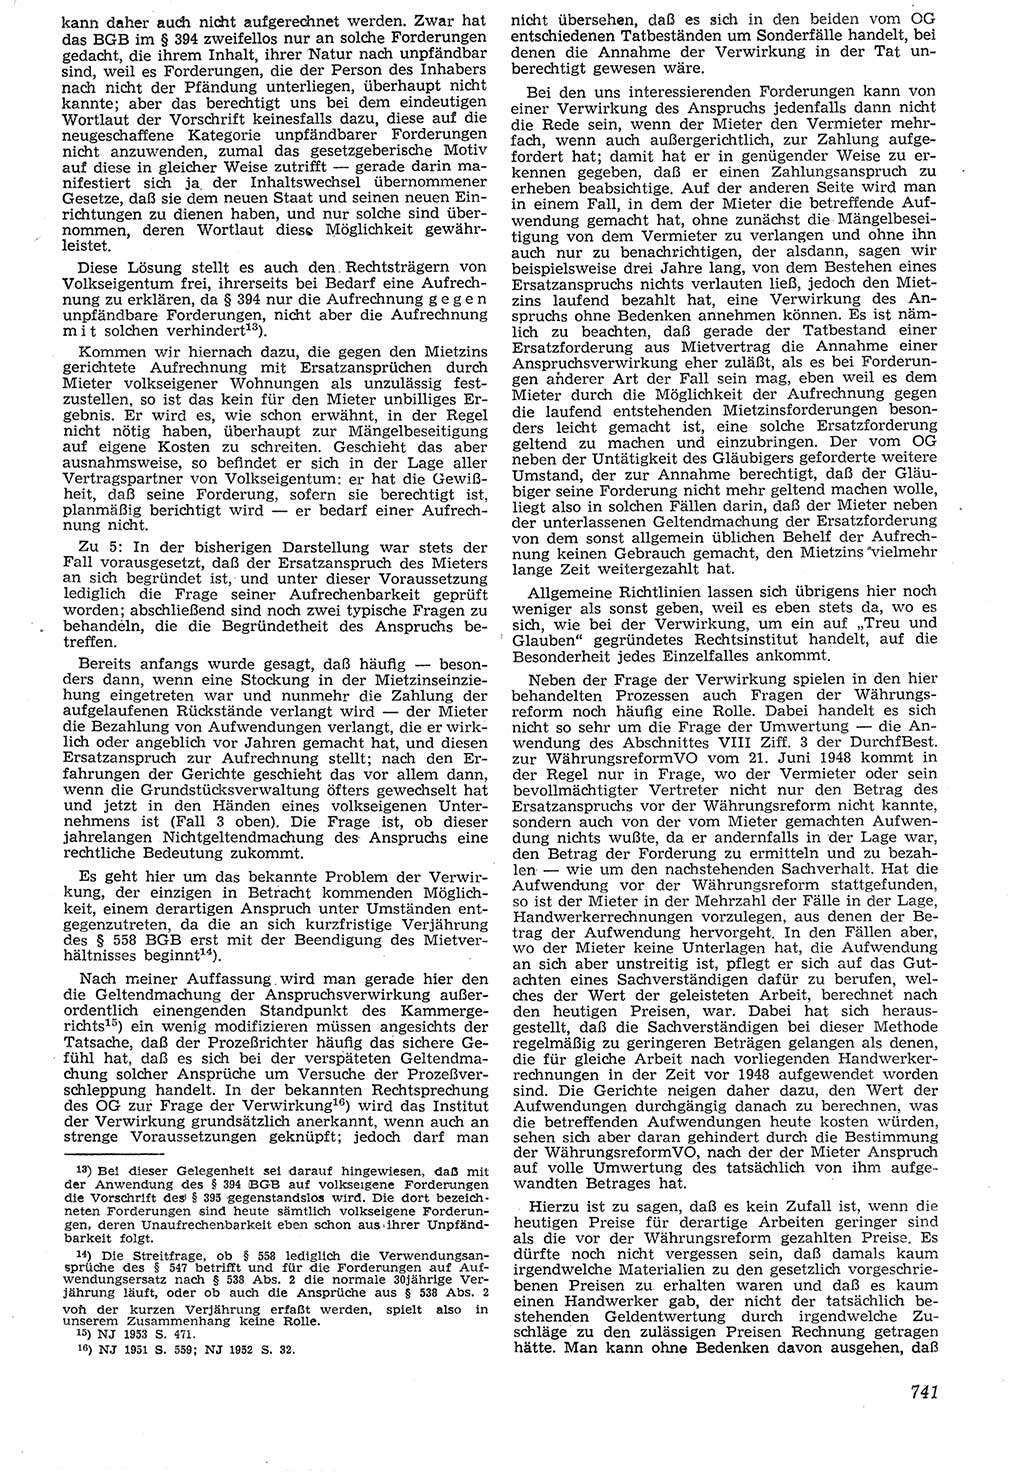 Neue Justiz (NJ), Zeitschrift für Recht und Rechtswissenschaft [Deutsche Demokratische Republik (DDR)], 7. Jahrgang 1953, Seite 741 (NJ DDR 1953, S. 741)